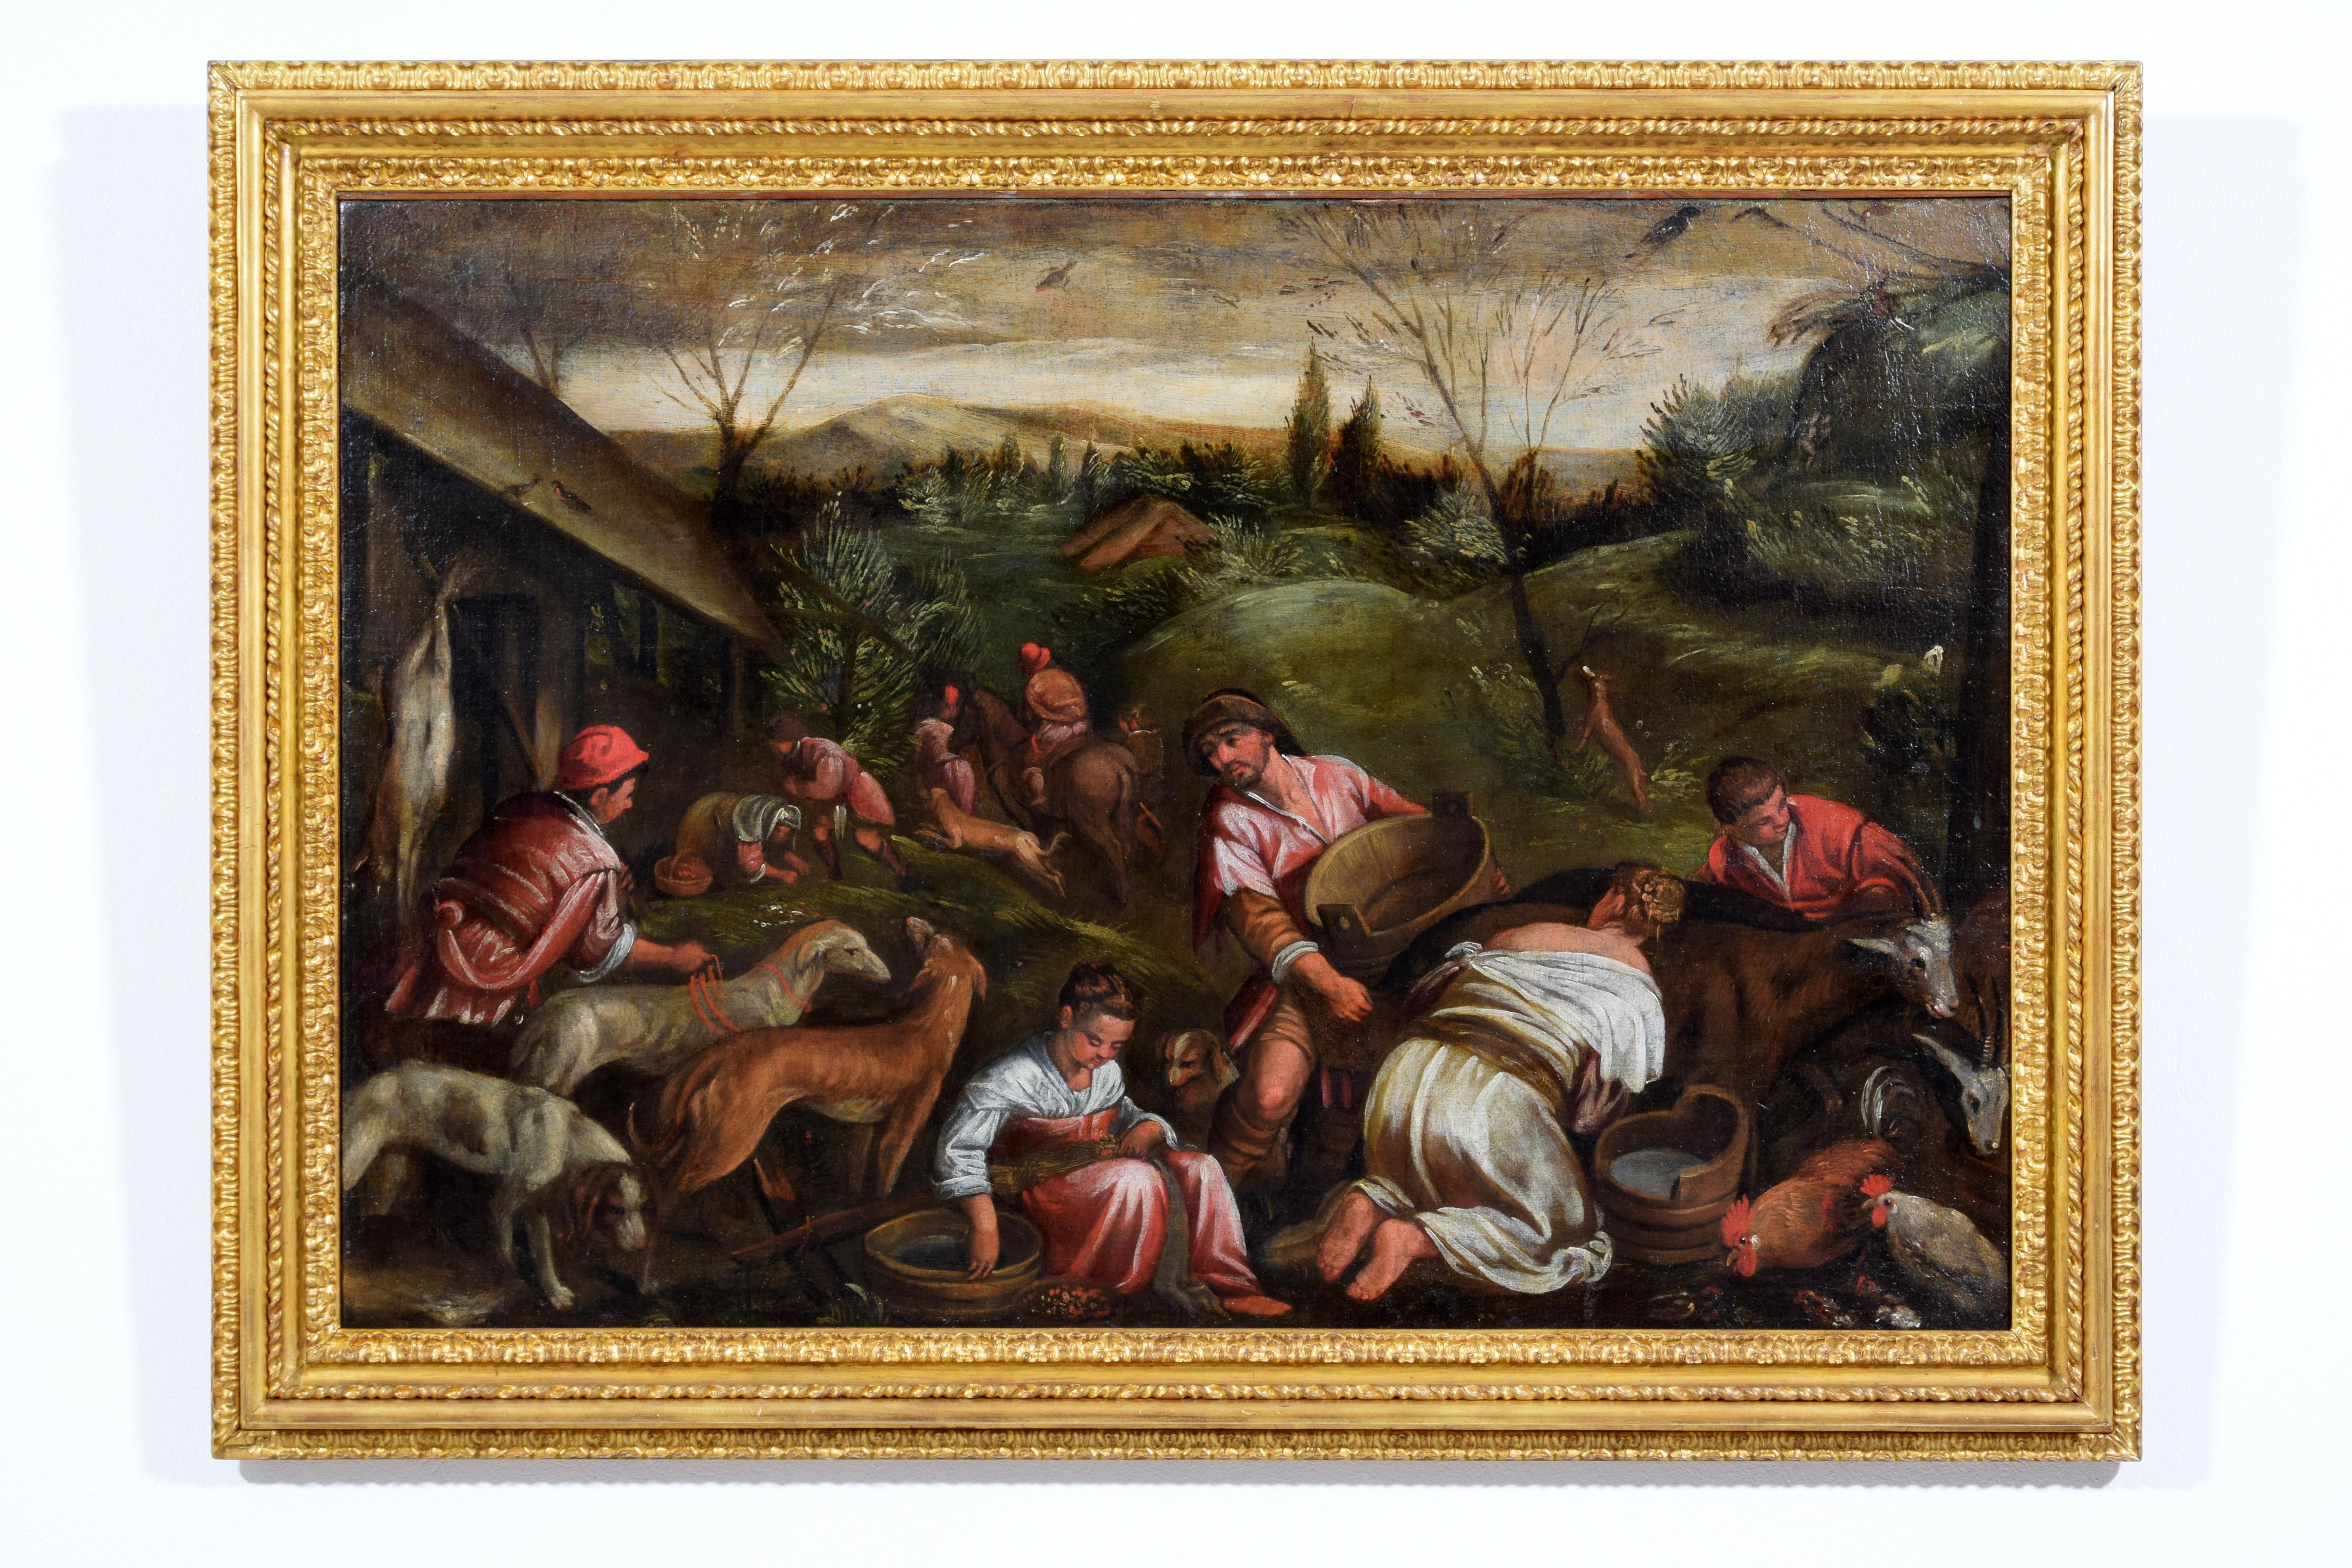 Suiveur de Jacopo Da Ponte, dit Jacopo Bassano (Bassano del Grappa, vers 1510 - Bassano del Grappa, 13 février 1592), XVIIe siècle.
Allégorie du printemps
Dimensions : Avec cadre : cm L 122,5 x H 89 x P 6,5. Toile : cm L 106,5 x H 72

Le tableau,